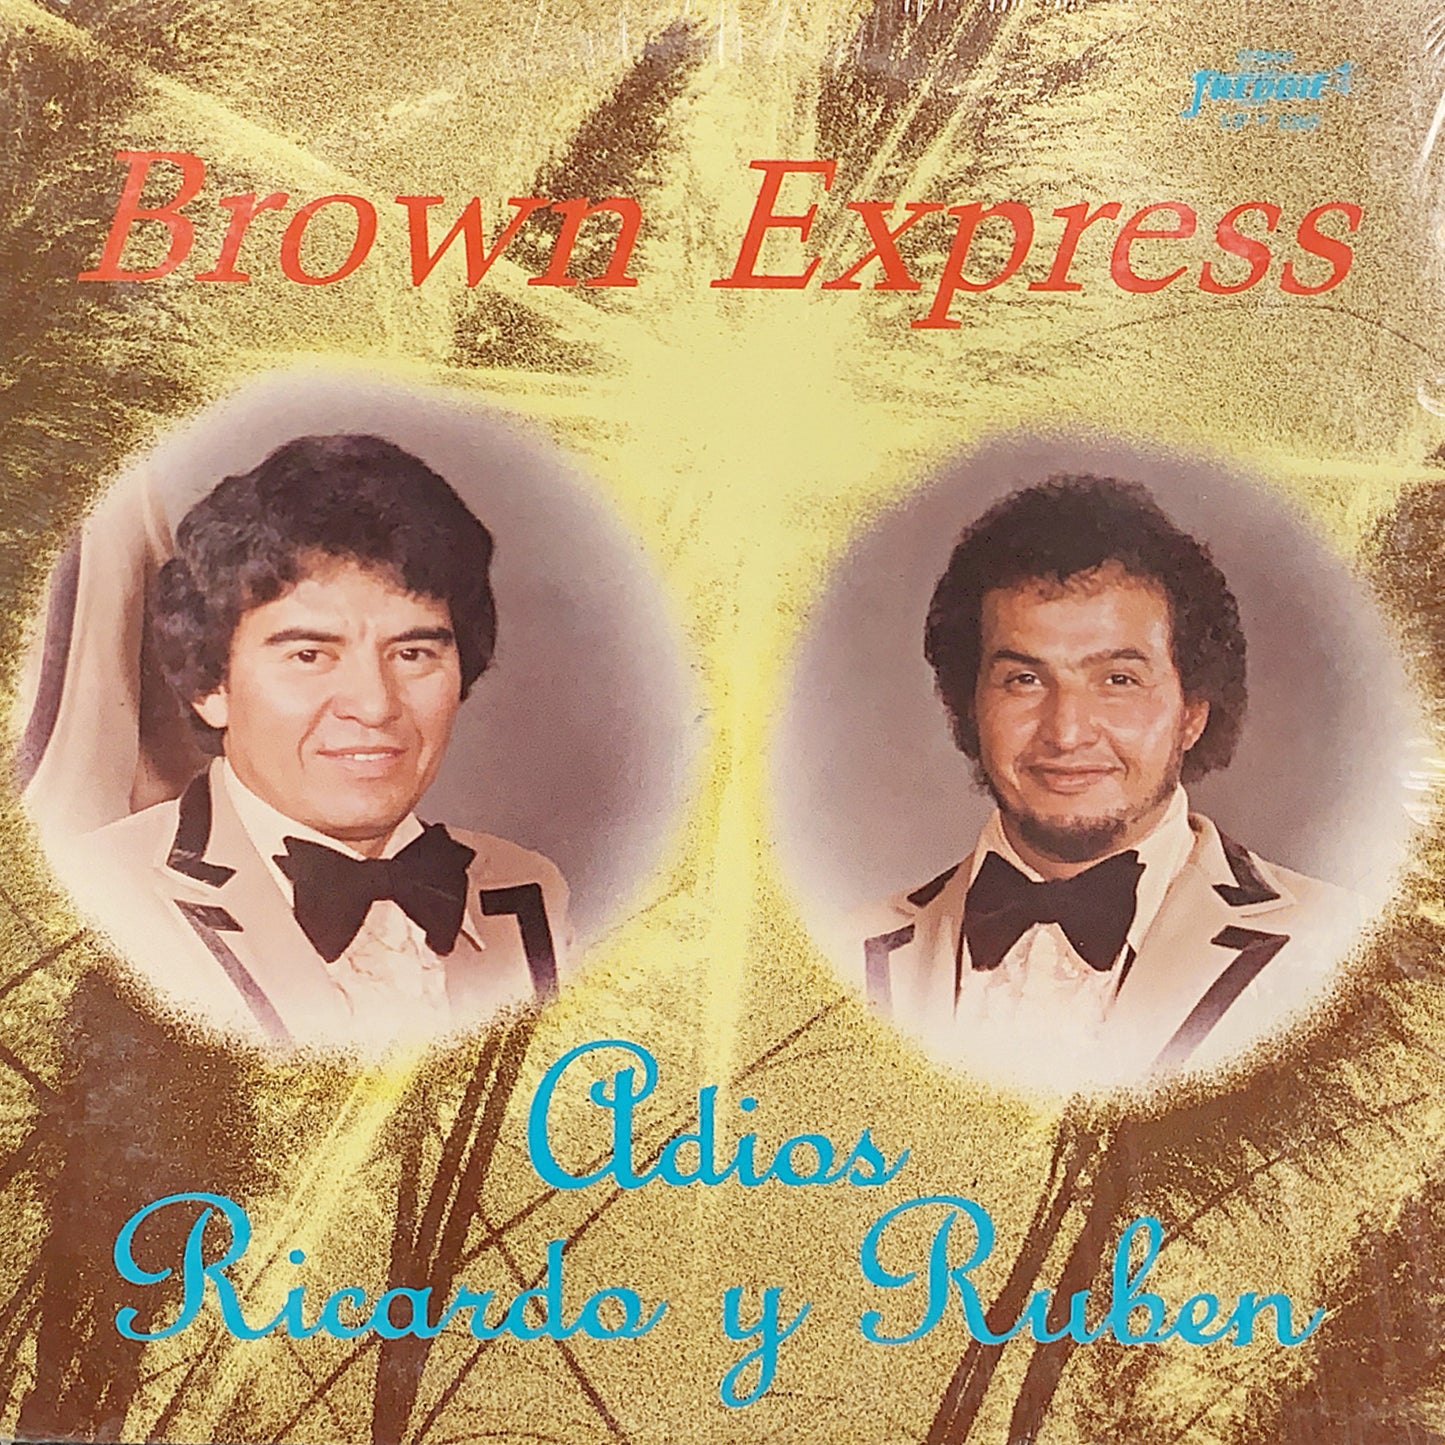 Brown Express - Adios Ricardo y Ruben (Vinyl)